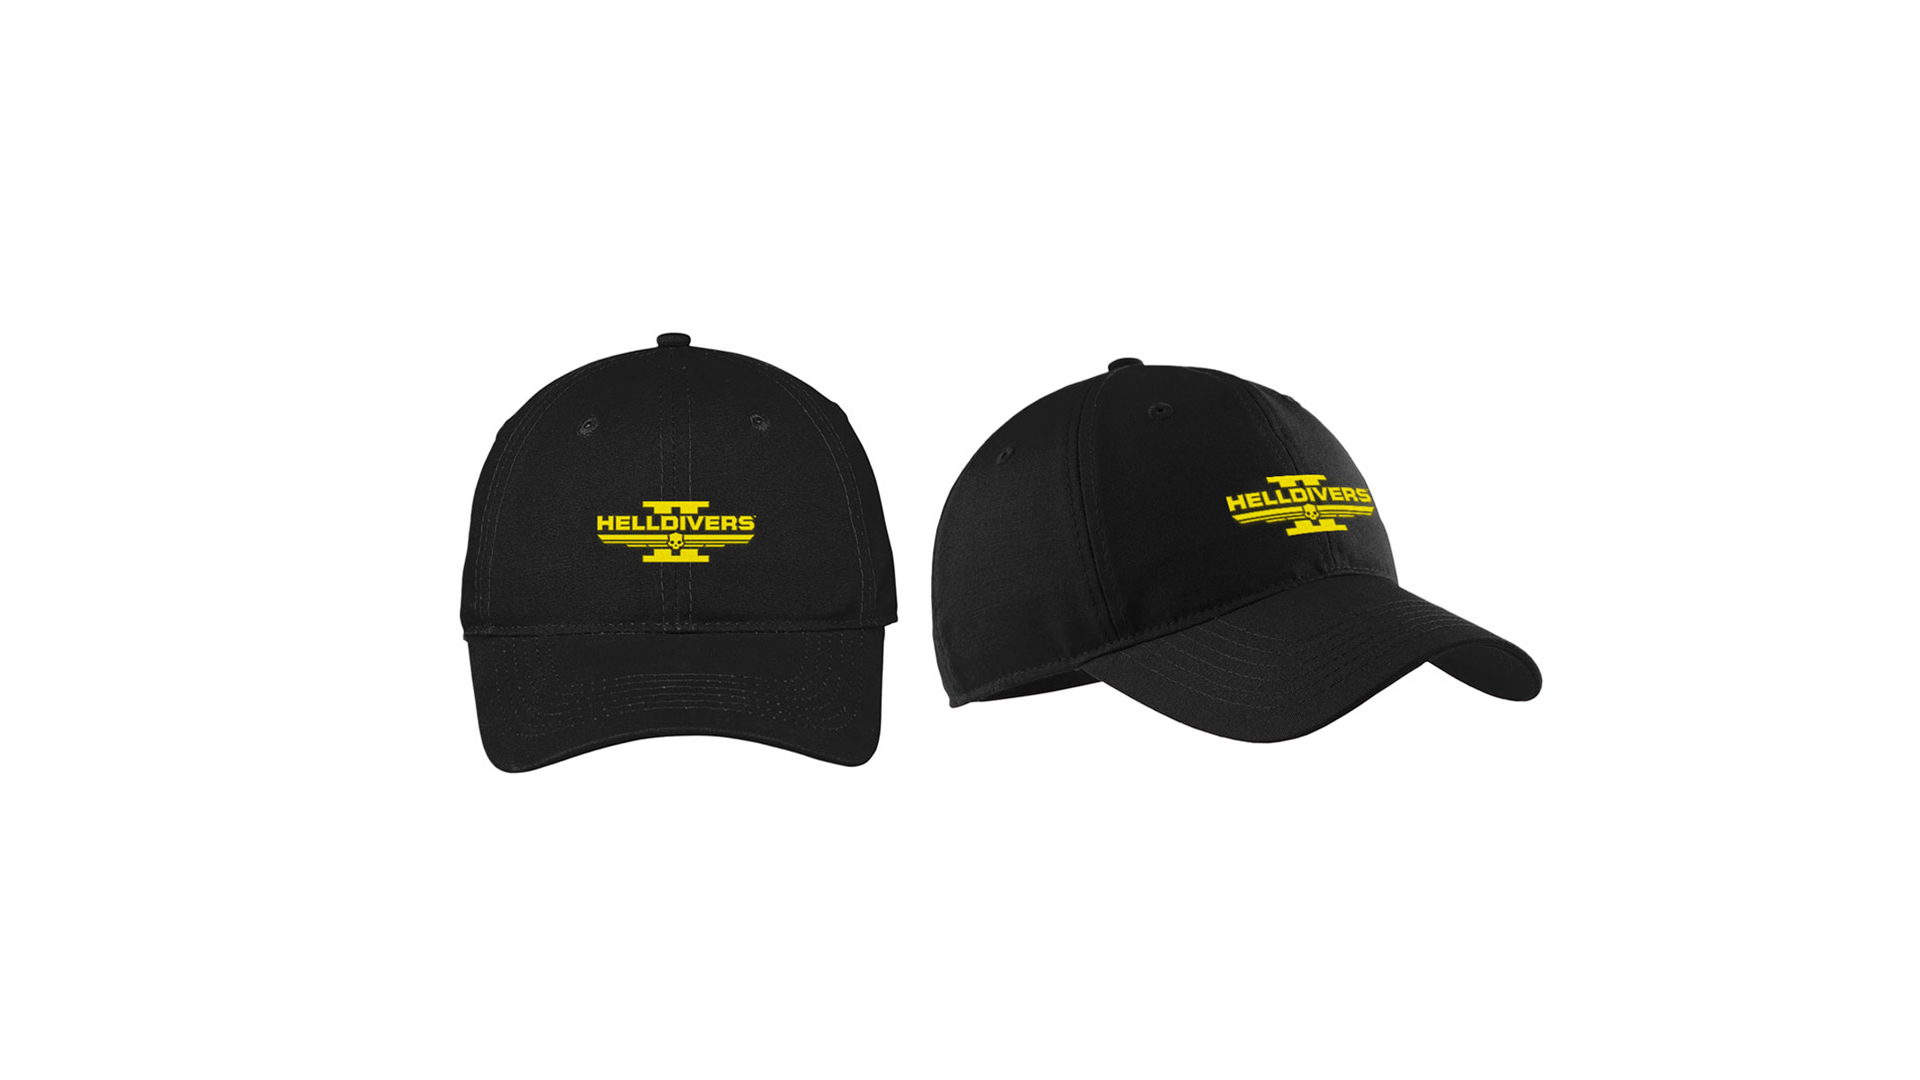  "یک کلاه بیسبال مشکی با آرم Helldivers 2 به رنگ زرد که در جلوی آن نقش بسته است."